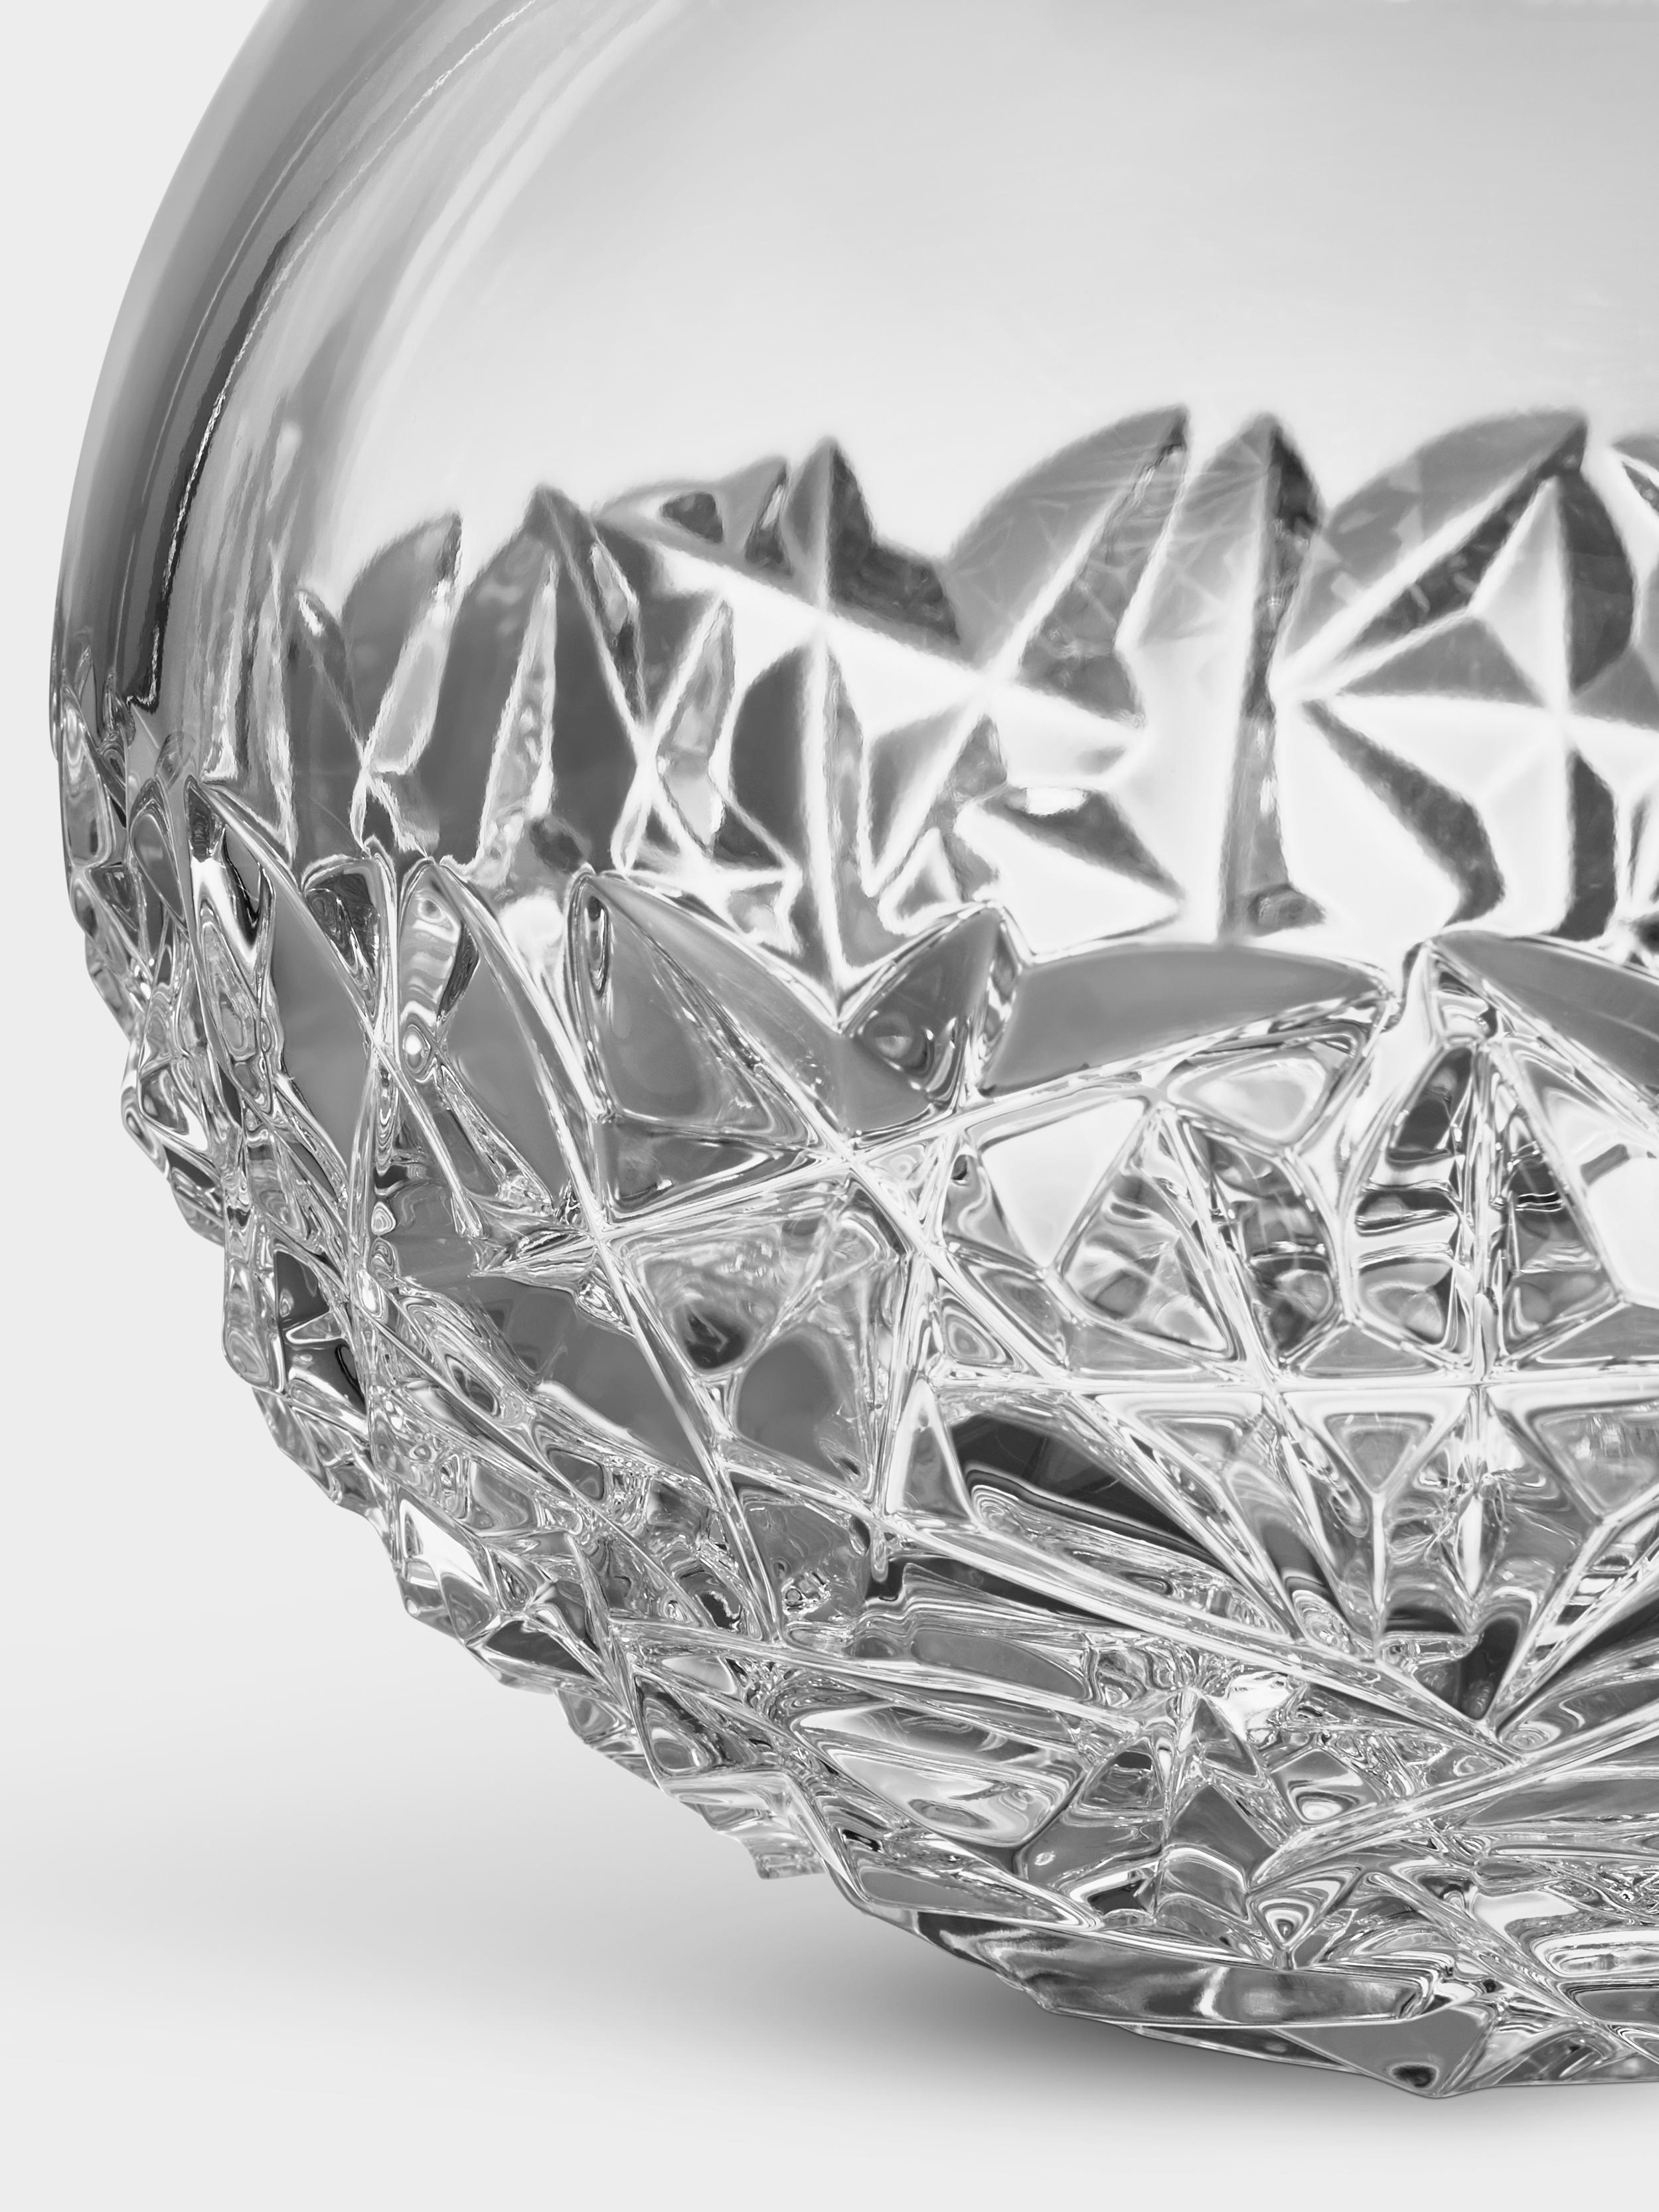 La collection Carat est basée sur une interprétation contemporaine du verre taillé traditionnel qui a fait la renommée mondiale d'Orrefors. Le vase Carat Globe Vase Large présente un motif asymétrique à la base, qui produit de magnifiques reflets de